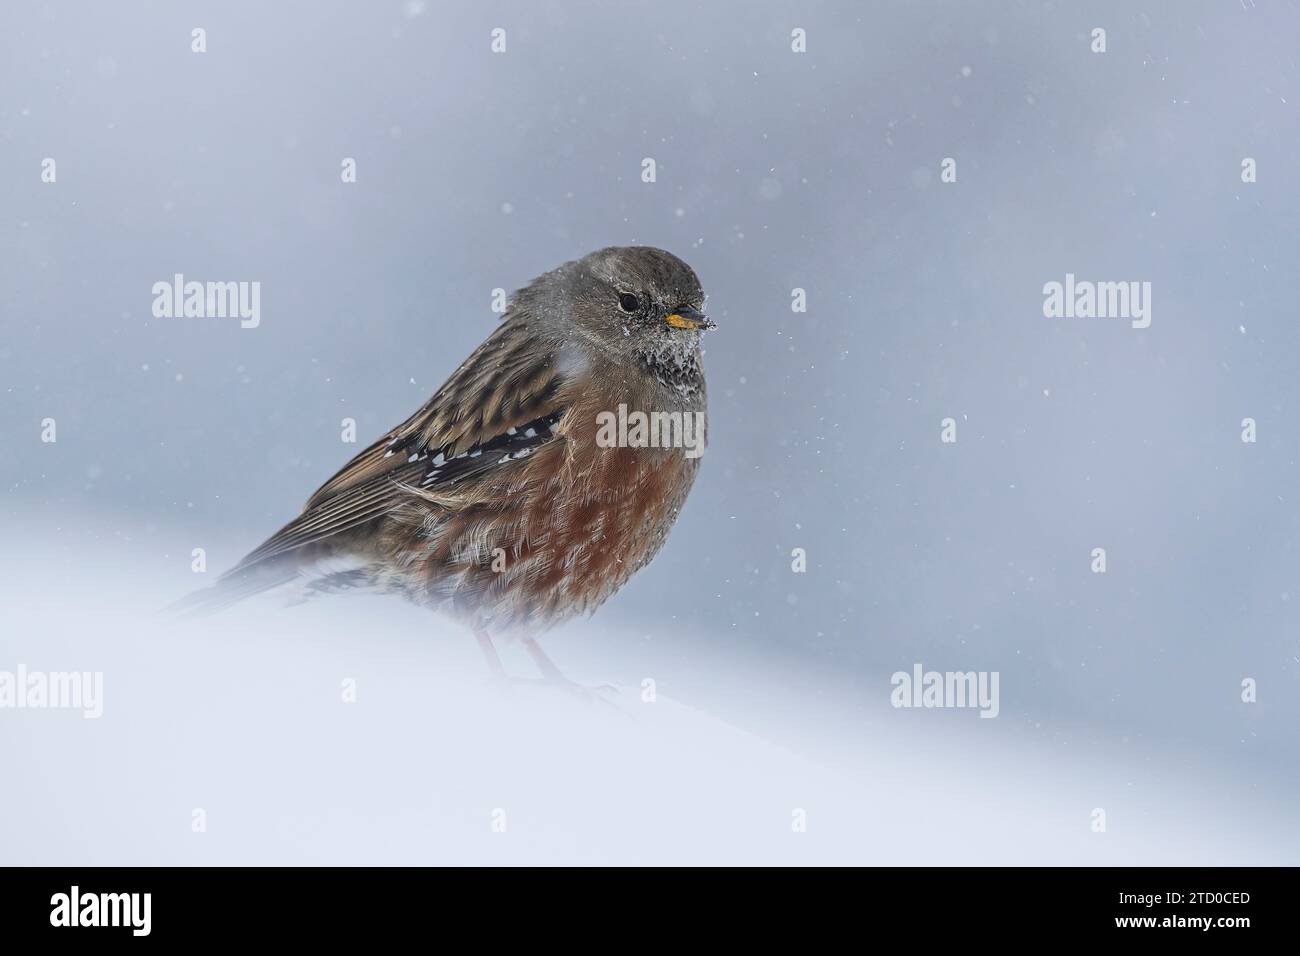 Ein kleiner alpiner accentor-Vogel übersteht einen Schneesturm in den beschaulichen Schweizer Alpen, dessen Federn gegen die Kälte geflutet sind. Stockfoto